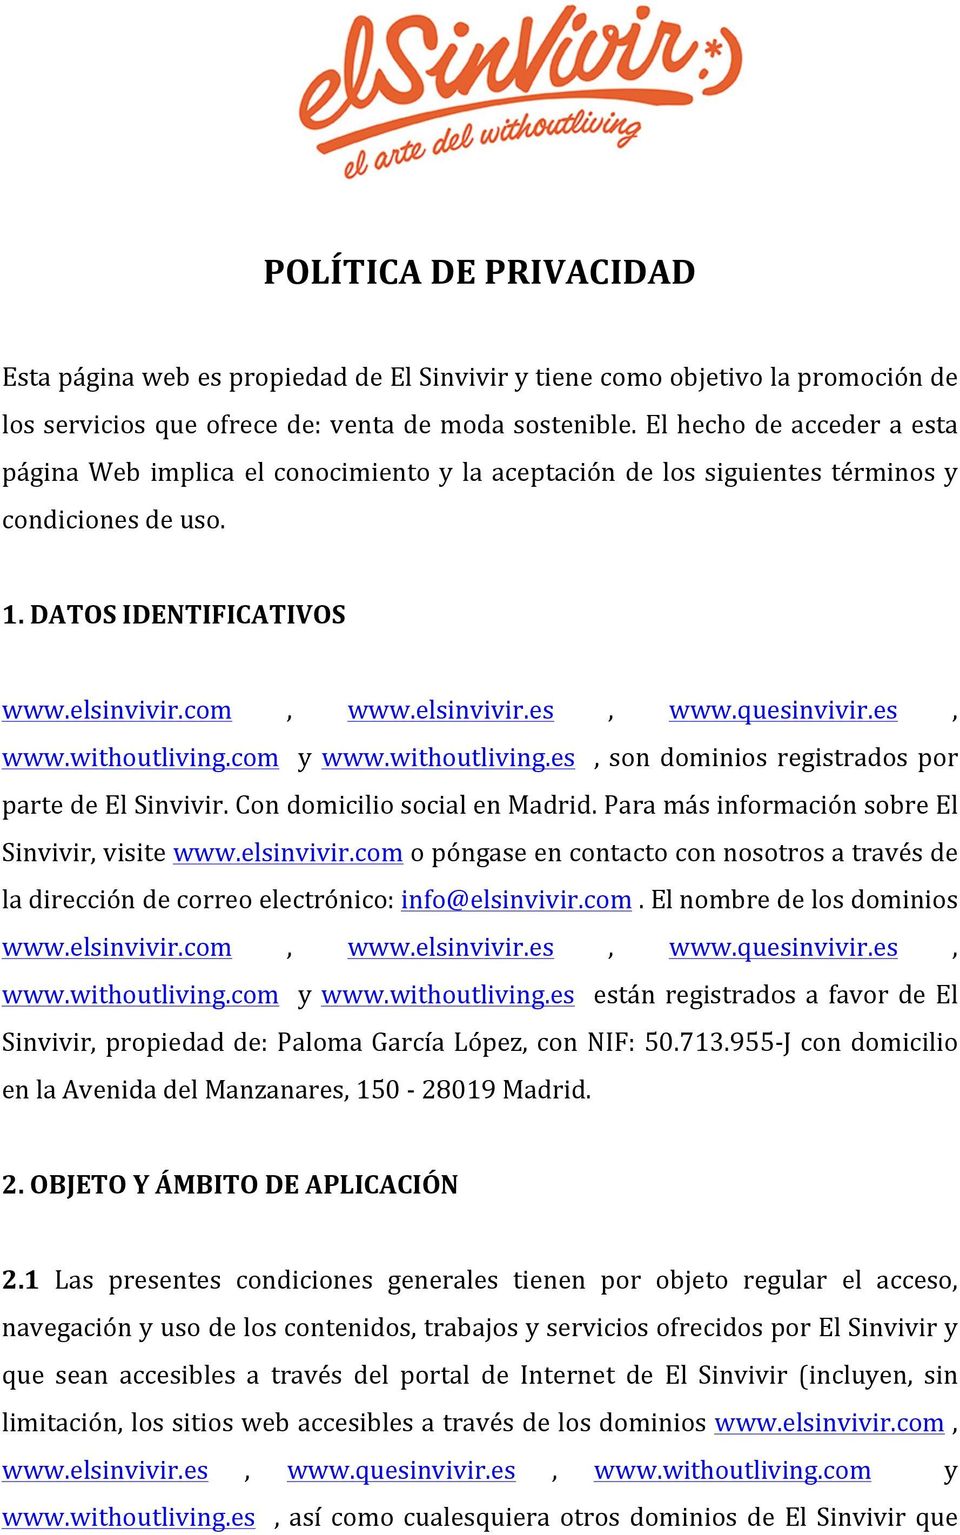 quesinvivir.es, www.withoutliving.com y www.withoutliving.es, son dominios registrados por parte de El Sinvivir. Con domicilio social en Madrid. Para más información sobre El Sinvivir, visite www.